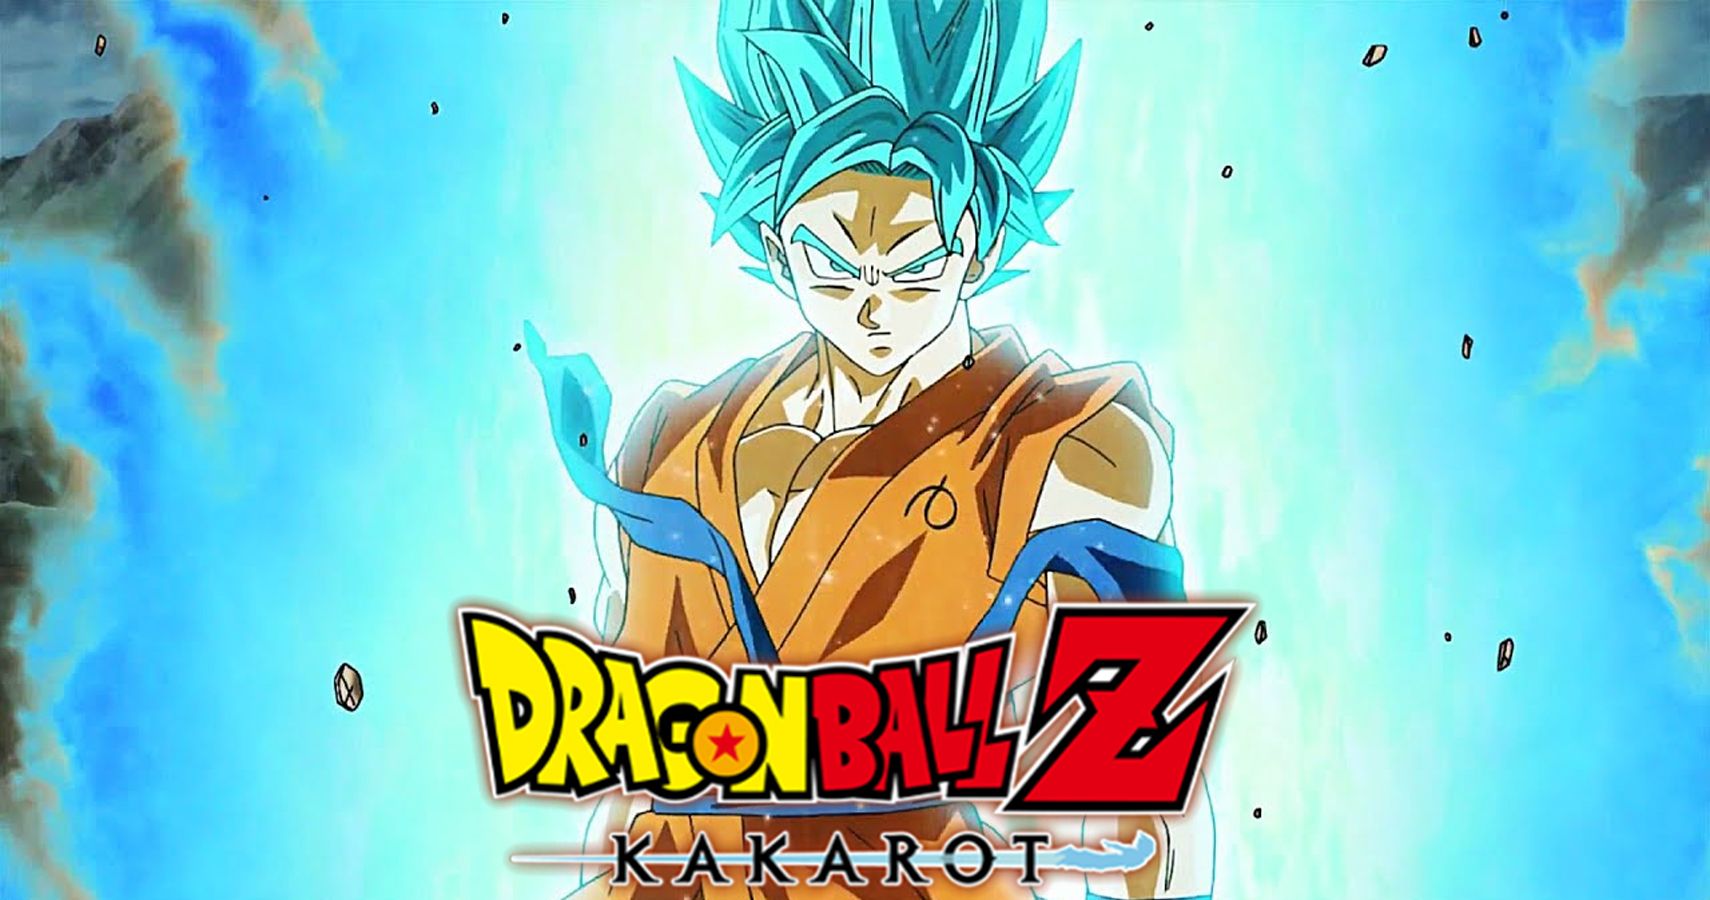 Dragon Ball Z Kakarot S Second Dlc Pack Adds Ssgss Goku And Vegeta